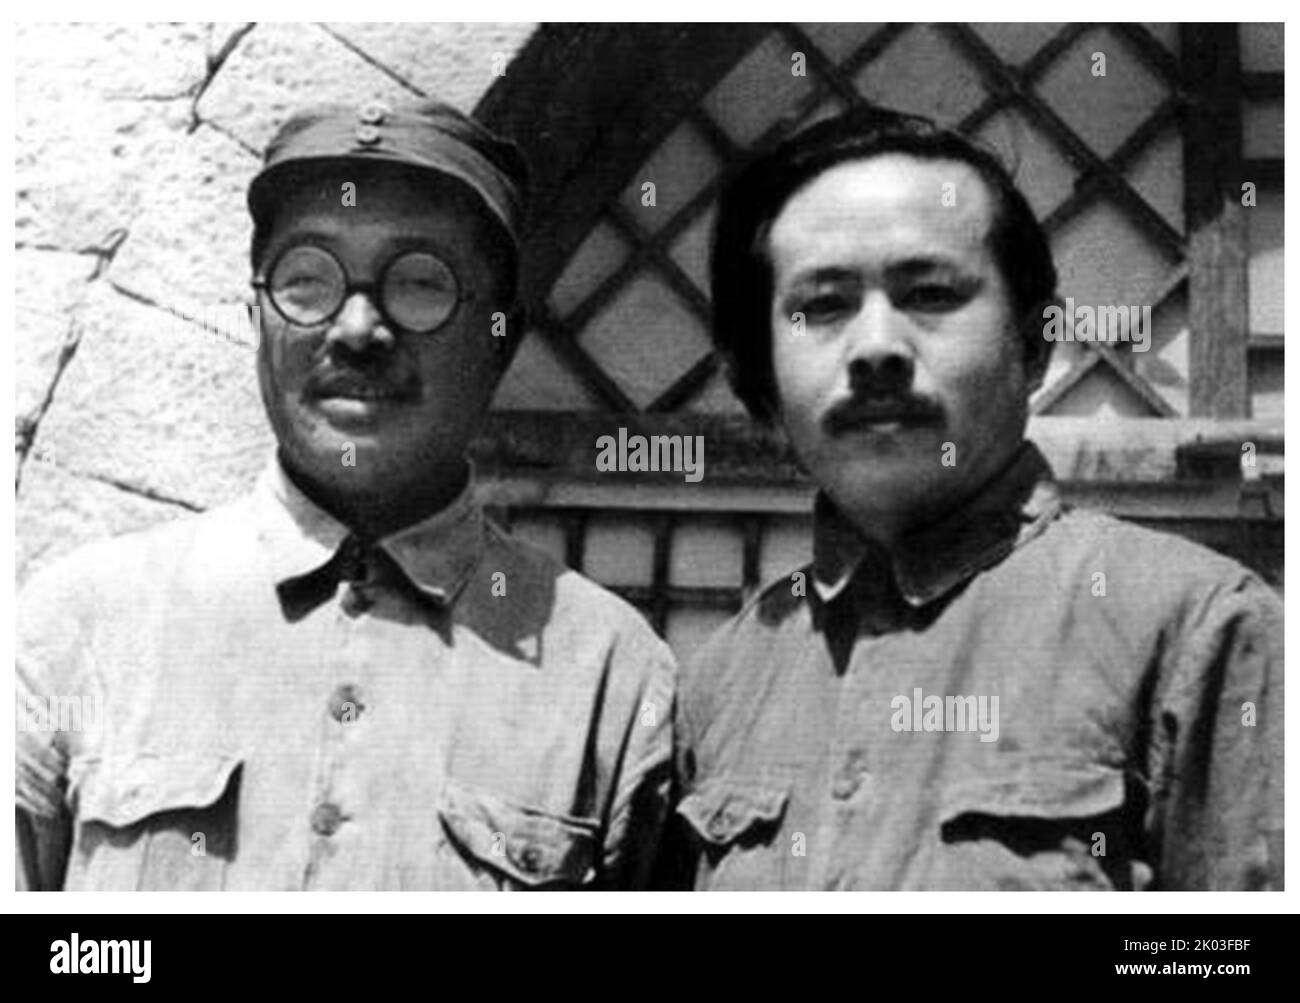 HE Long und Ren Bishi zusammen während des 7. Nationalen Kongresses der Kommunistischen Partei Chinas im Jahr 1945. Ren Bishi war ein militärischer und politischer Führer in der frühen Kommunistischen Partei Chinas. Anfang 1930s Stockfoto